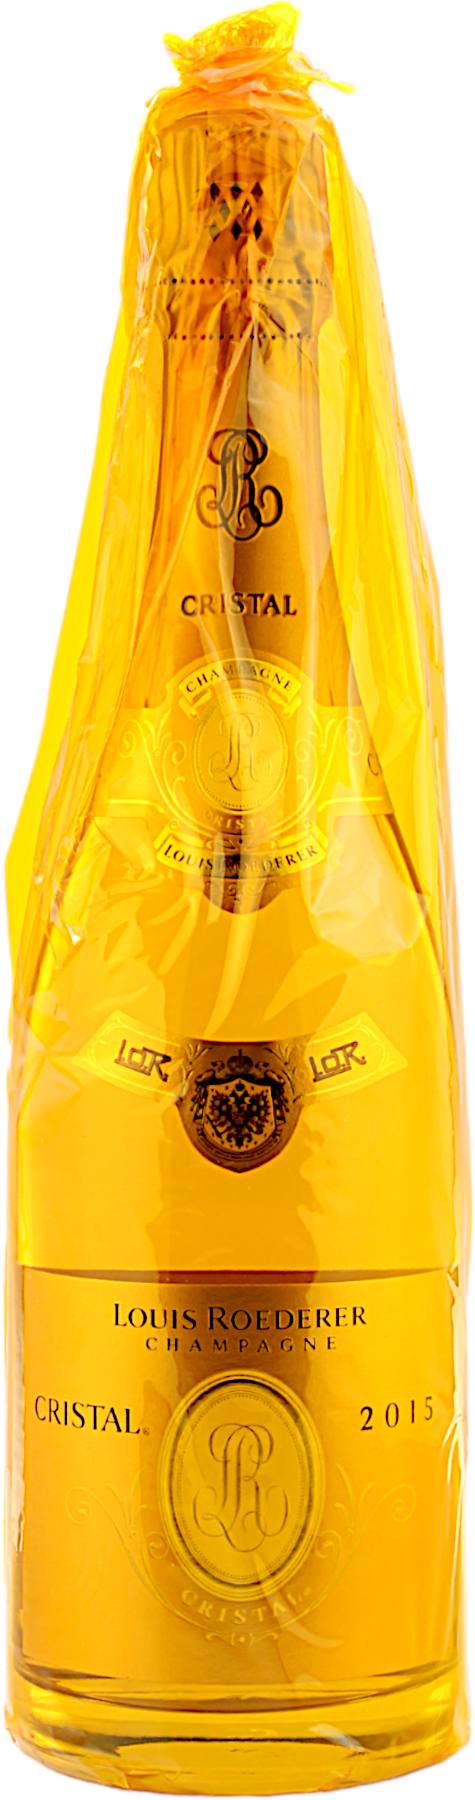 Louis Roederer Cristal 2015 Champagner 12.5% 0,75l